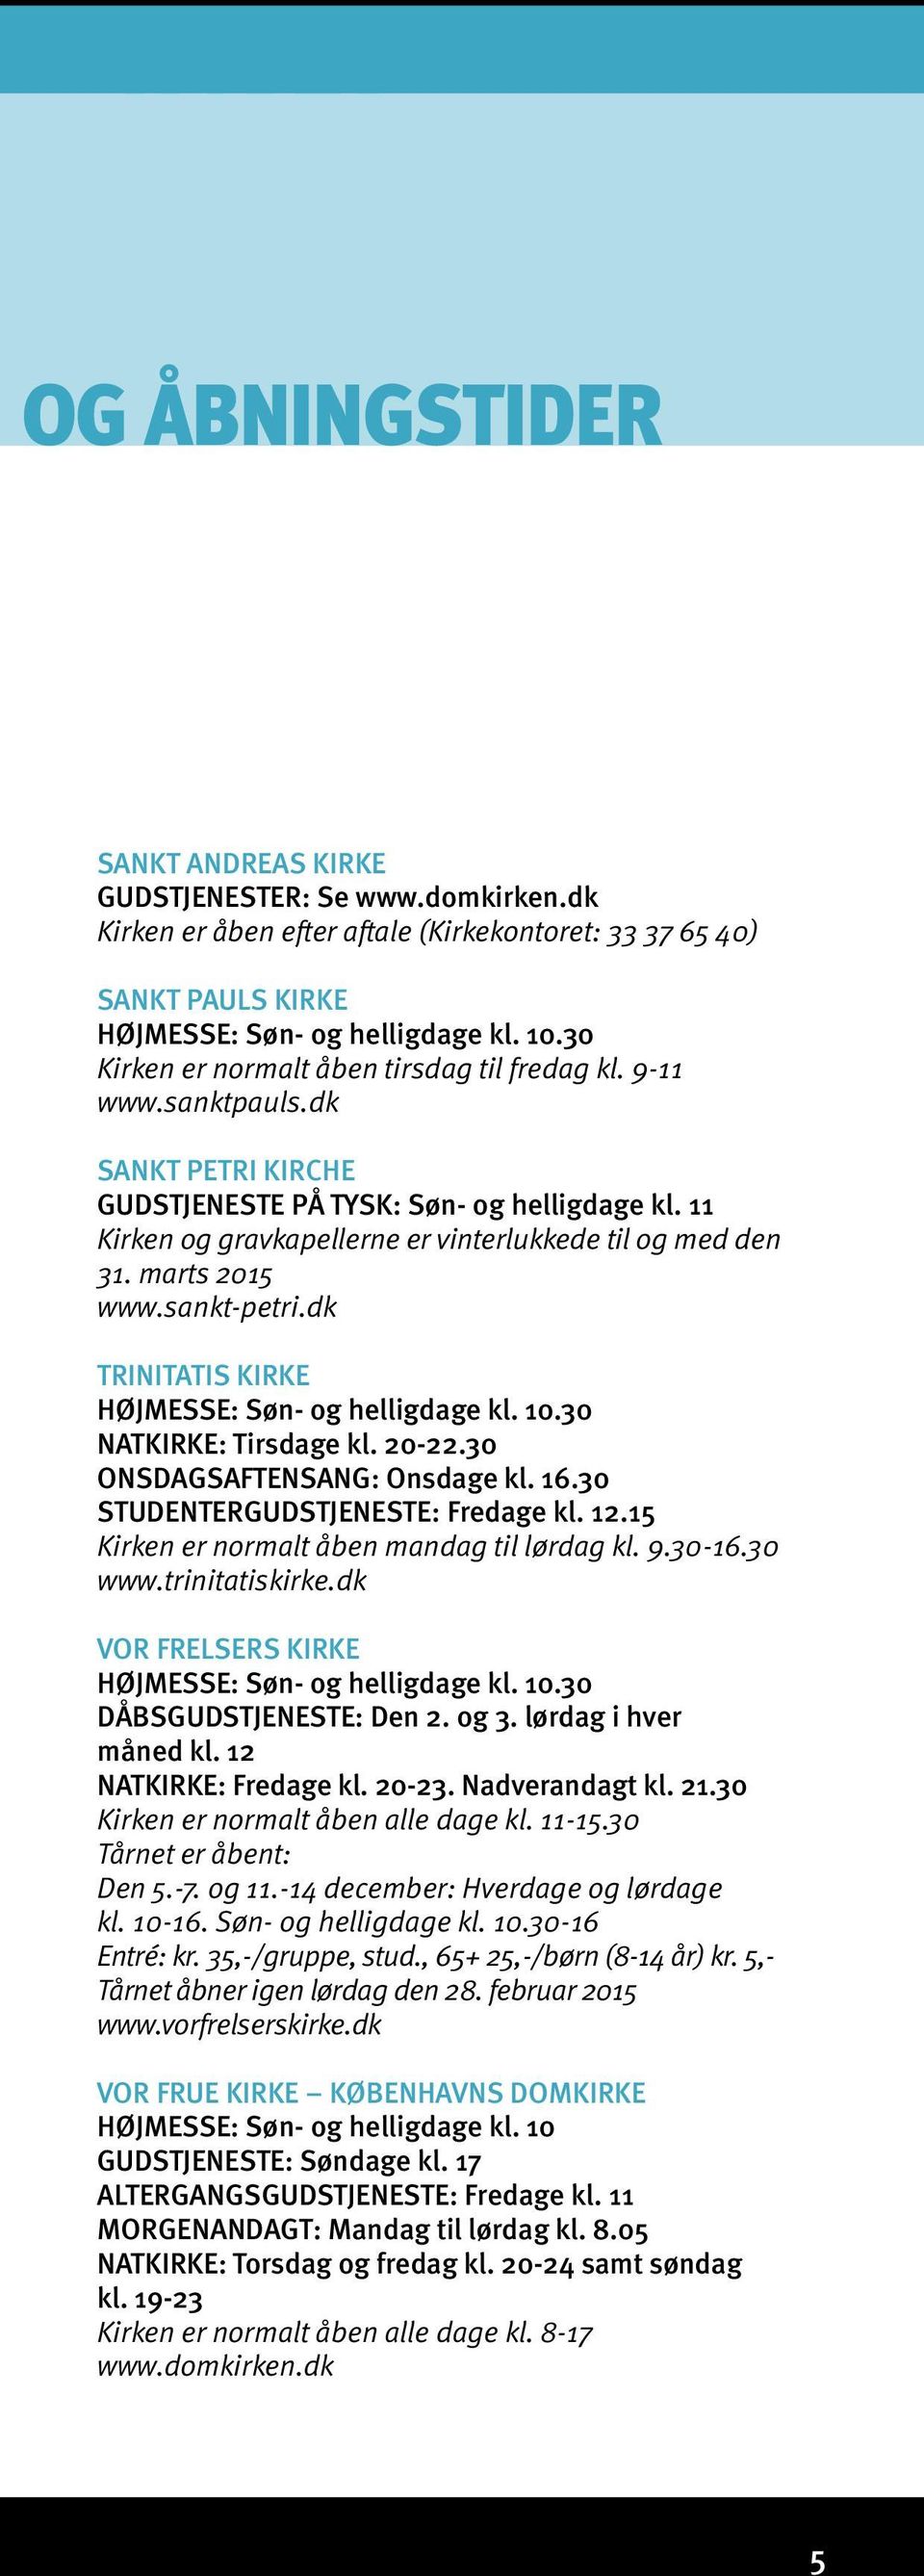 marts 2015 www.sankt-petri.dk HØJMESSE: Søn- og helligdage kl. 10.30 NATKIRKE: Tirsdage kl. 20-22.30 ONSDAGSAFTENSANG: Onsdage kl. 16.30 STUDENTERGUDSTJENESTE: Fredage kl. 12.